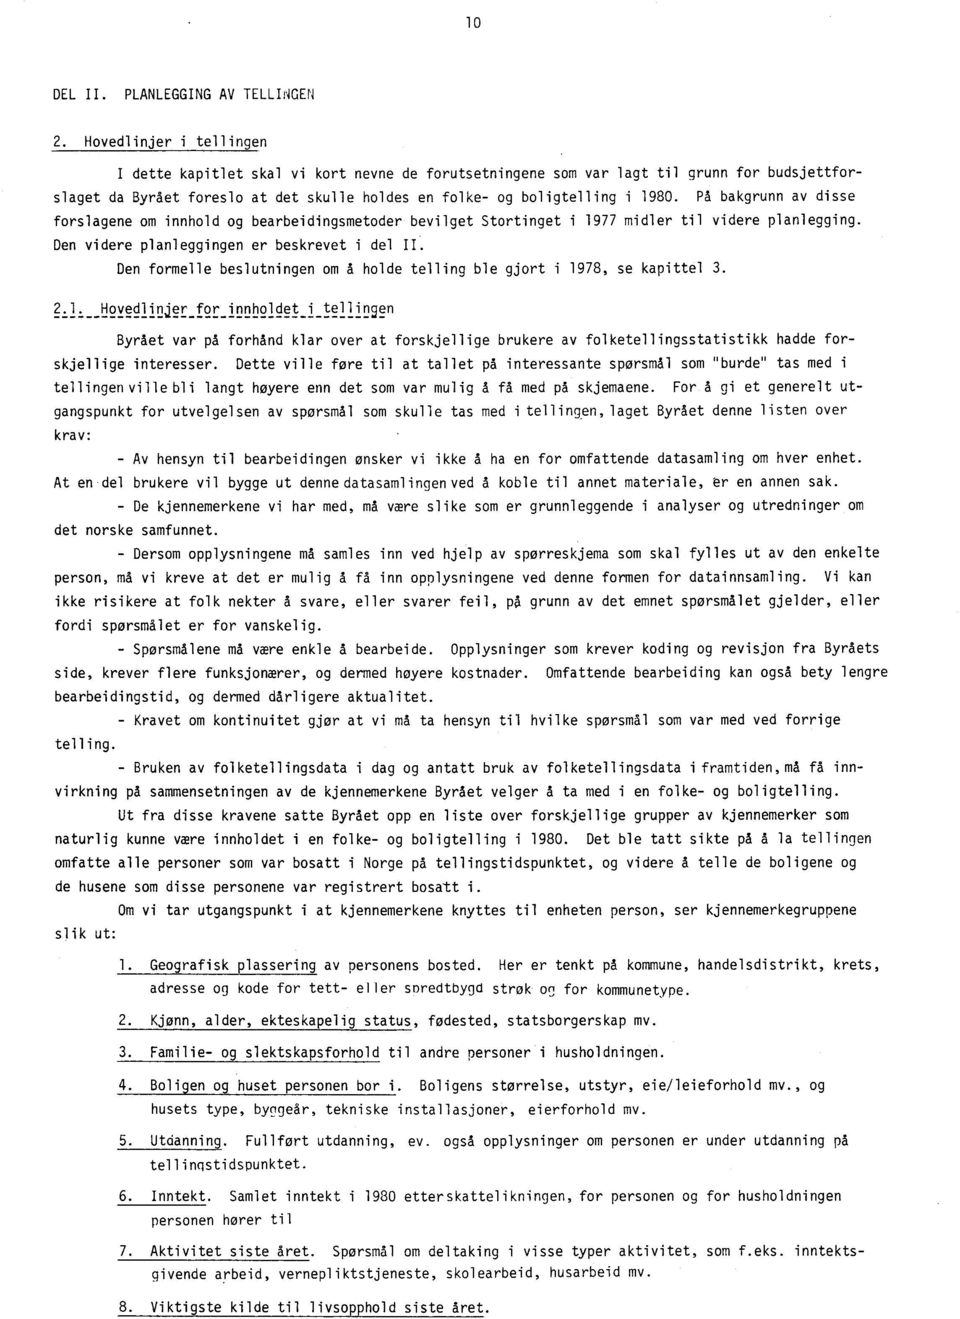 På bakgrunn av disse forslagene om innhold og bearbeidingsmetoder bevilget Stortinget i 1977 midler til videre planlegging. Den videre planleggingen er beskrevet i del II.